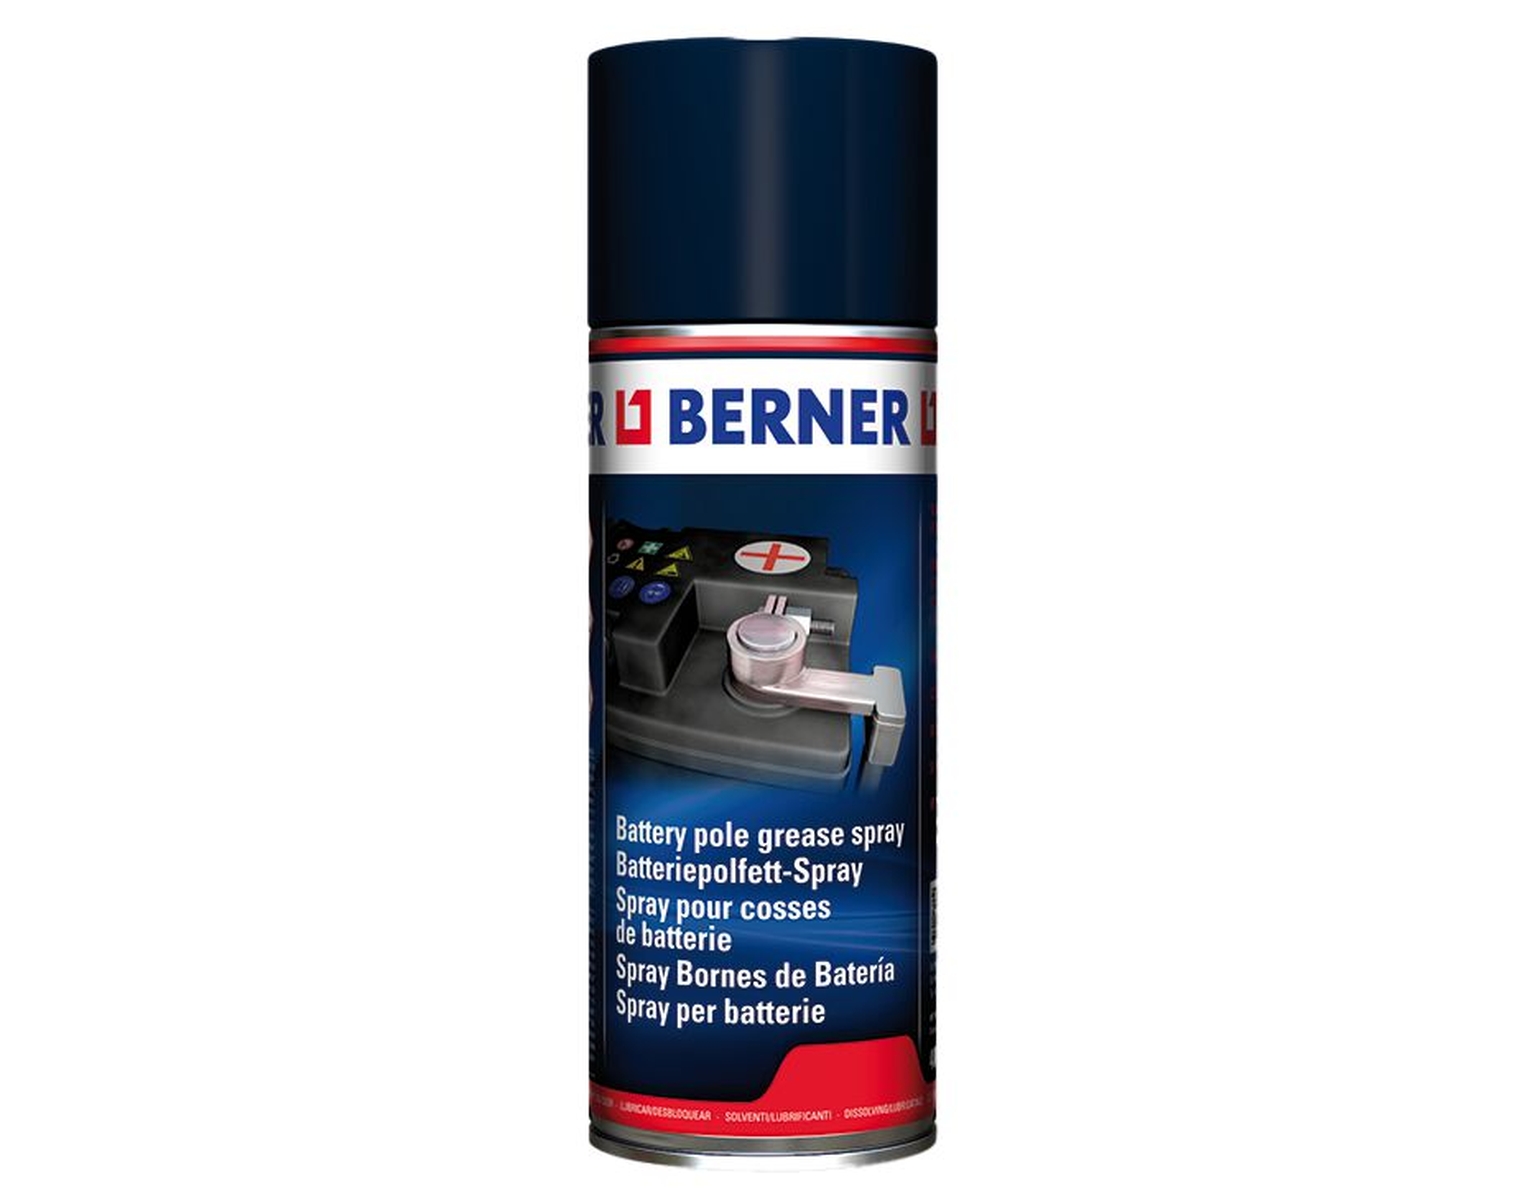 BERNER Spray de graisse pour batteries, 400 g